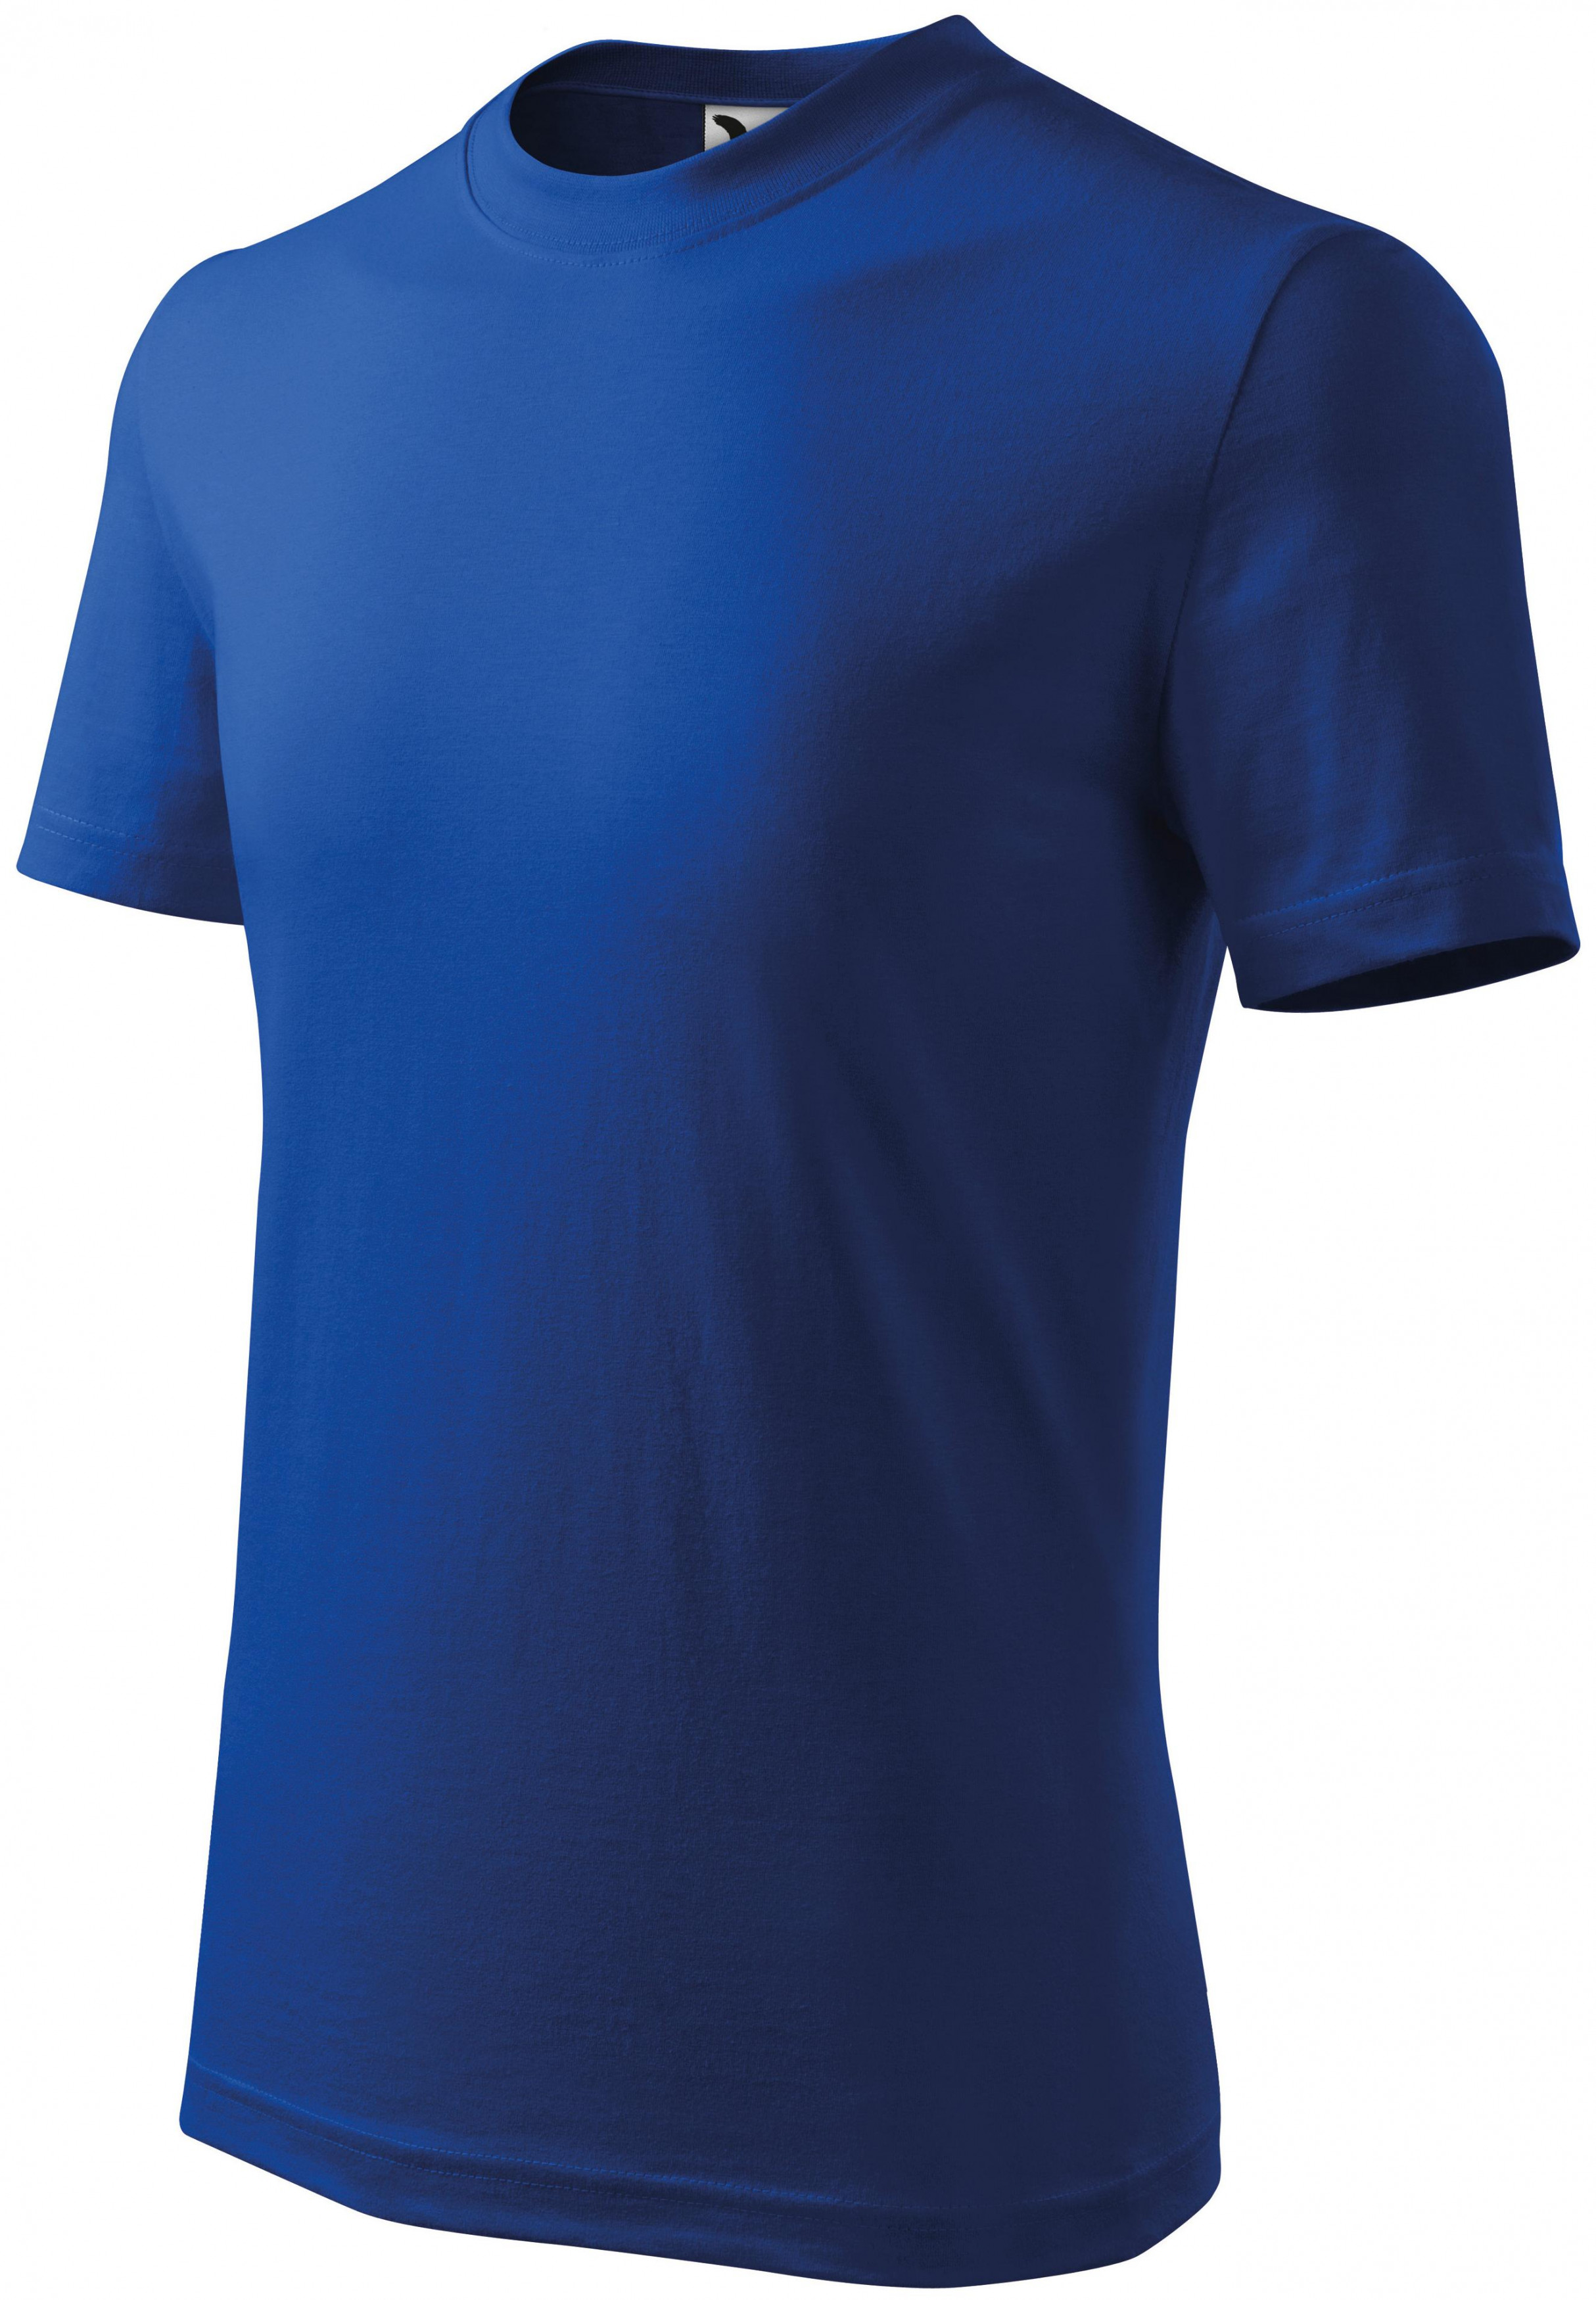 Detské tričko klasické, kráľovská modrá, 122cm / 6rokov